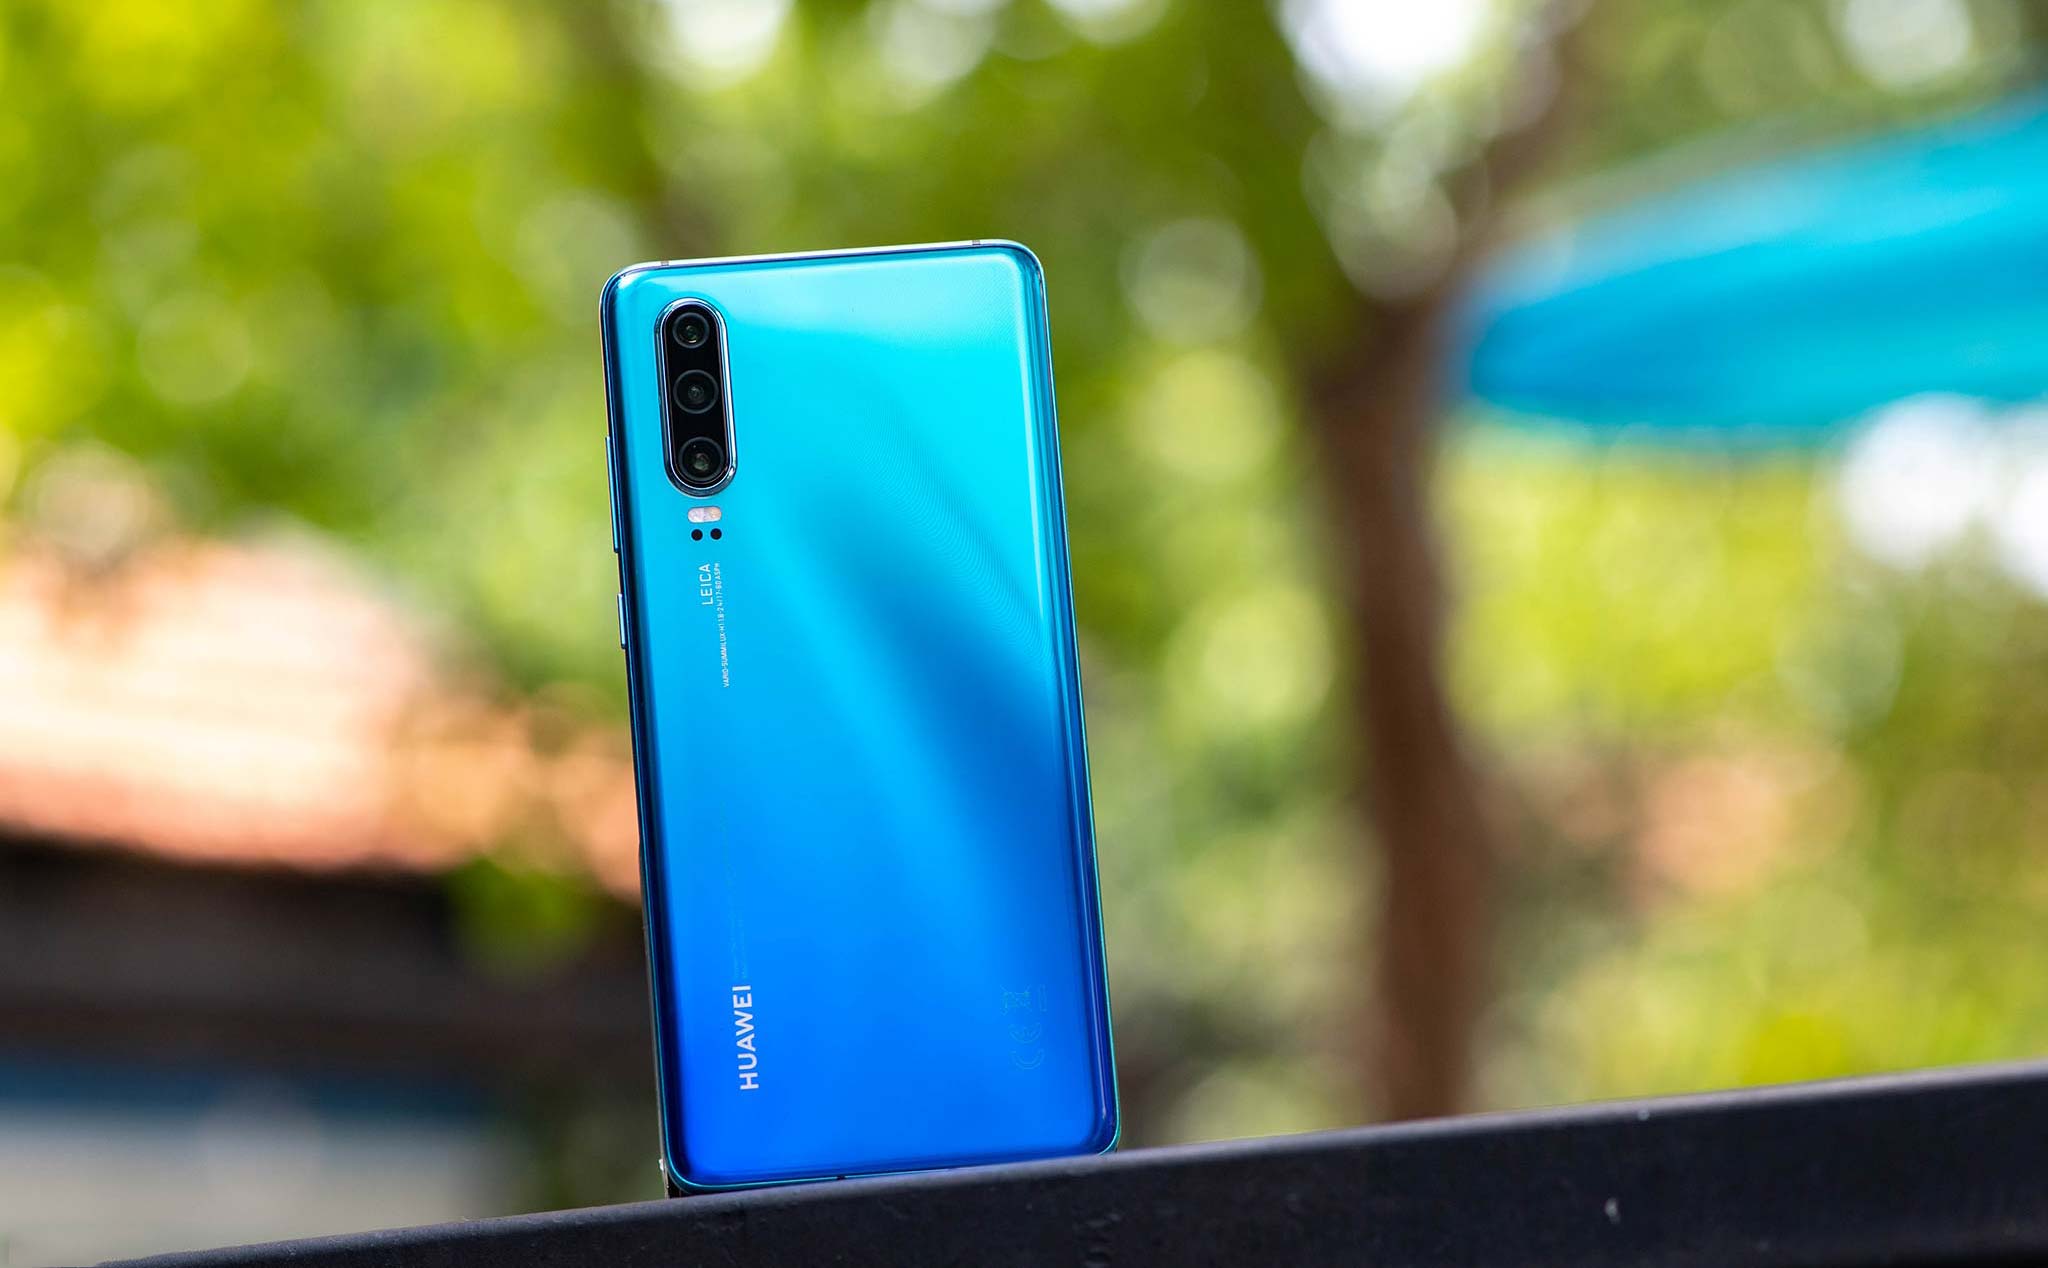 Huawei bán 118 triệu smartphone trong nửa đầu 2019, tăng 24%, doanh thu cũng tăng